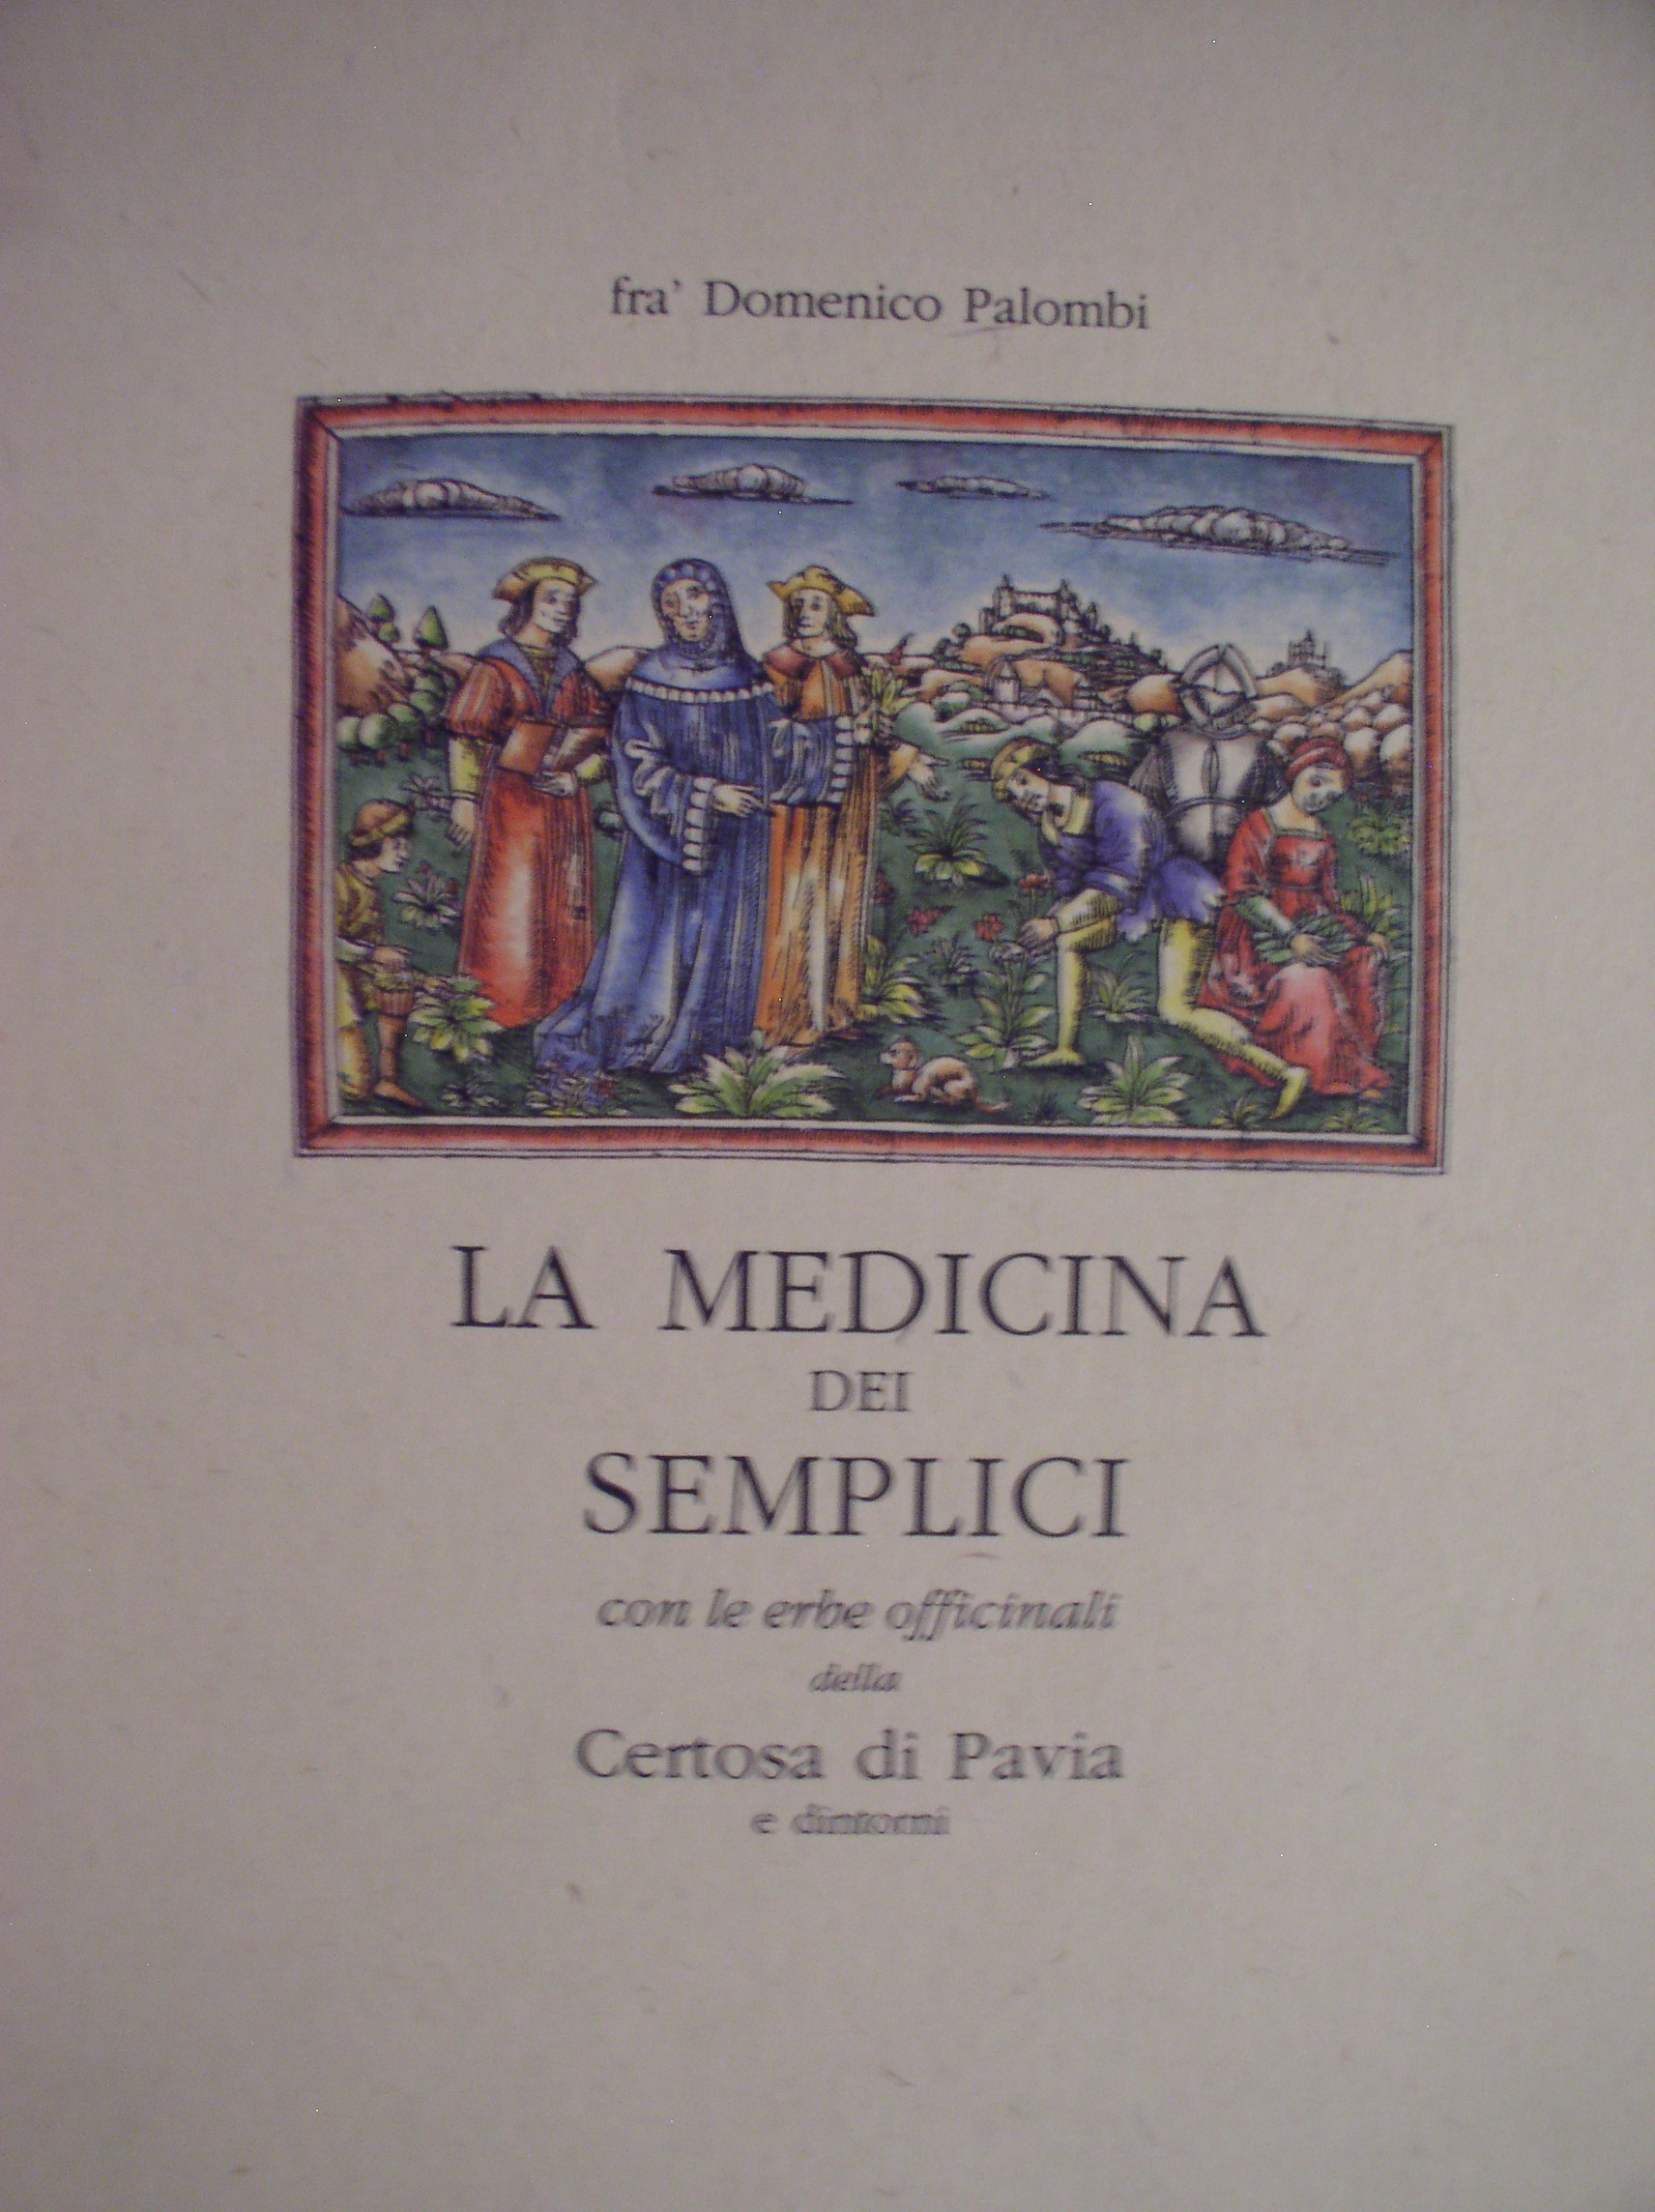 La medicina dei semplici Frà Domenico Palombi Anobii